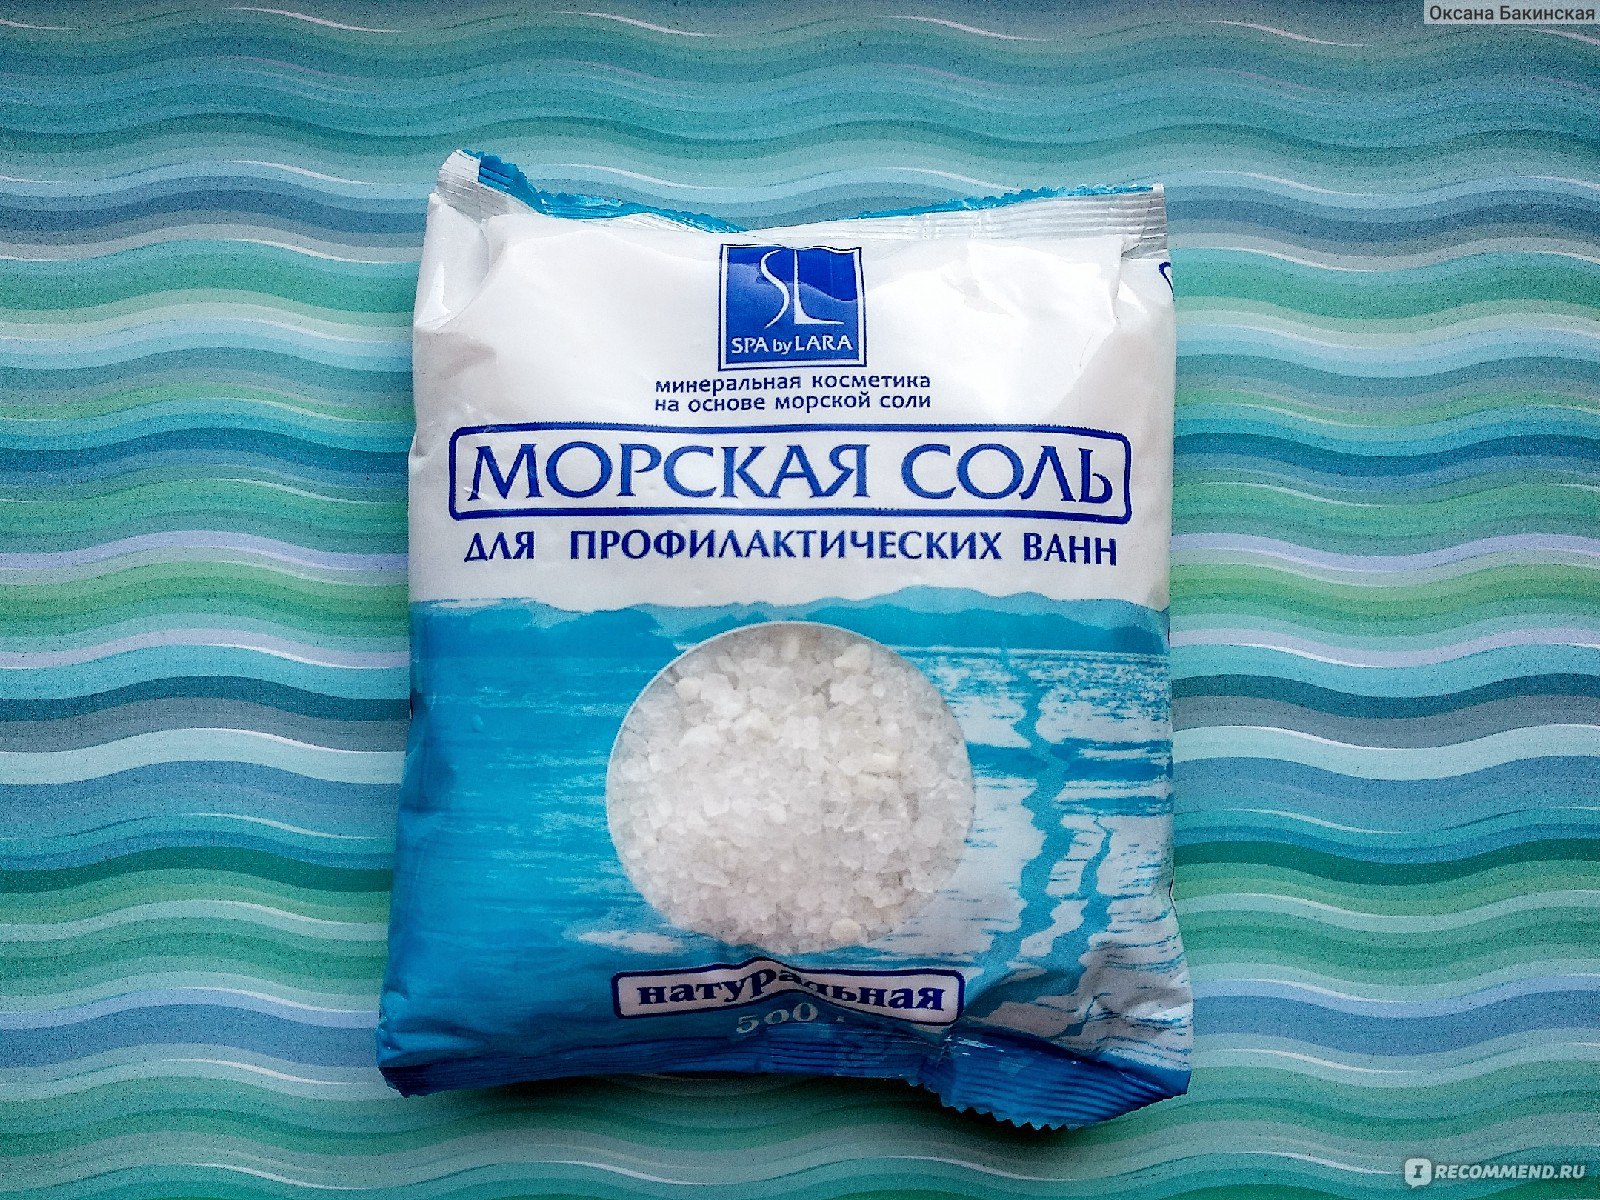 Красноярск купить соль для ванной торговля наркотиками в сша